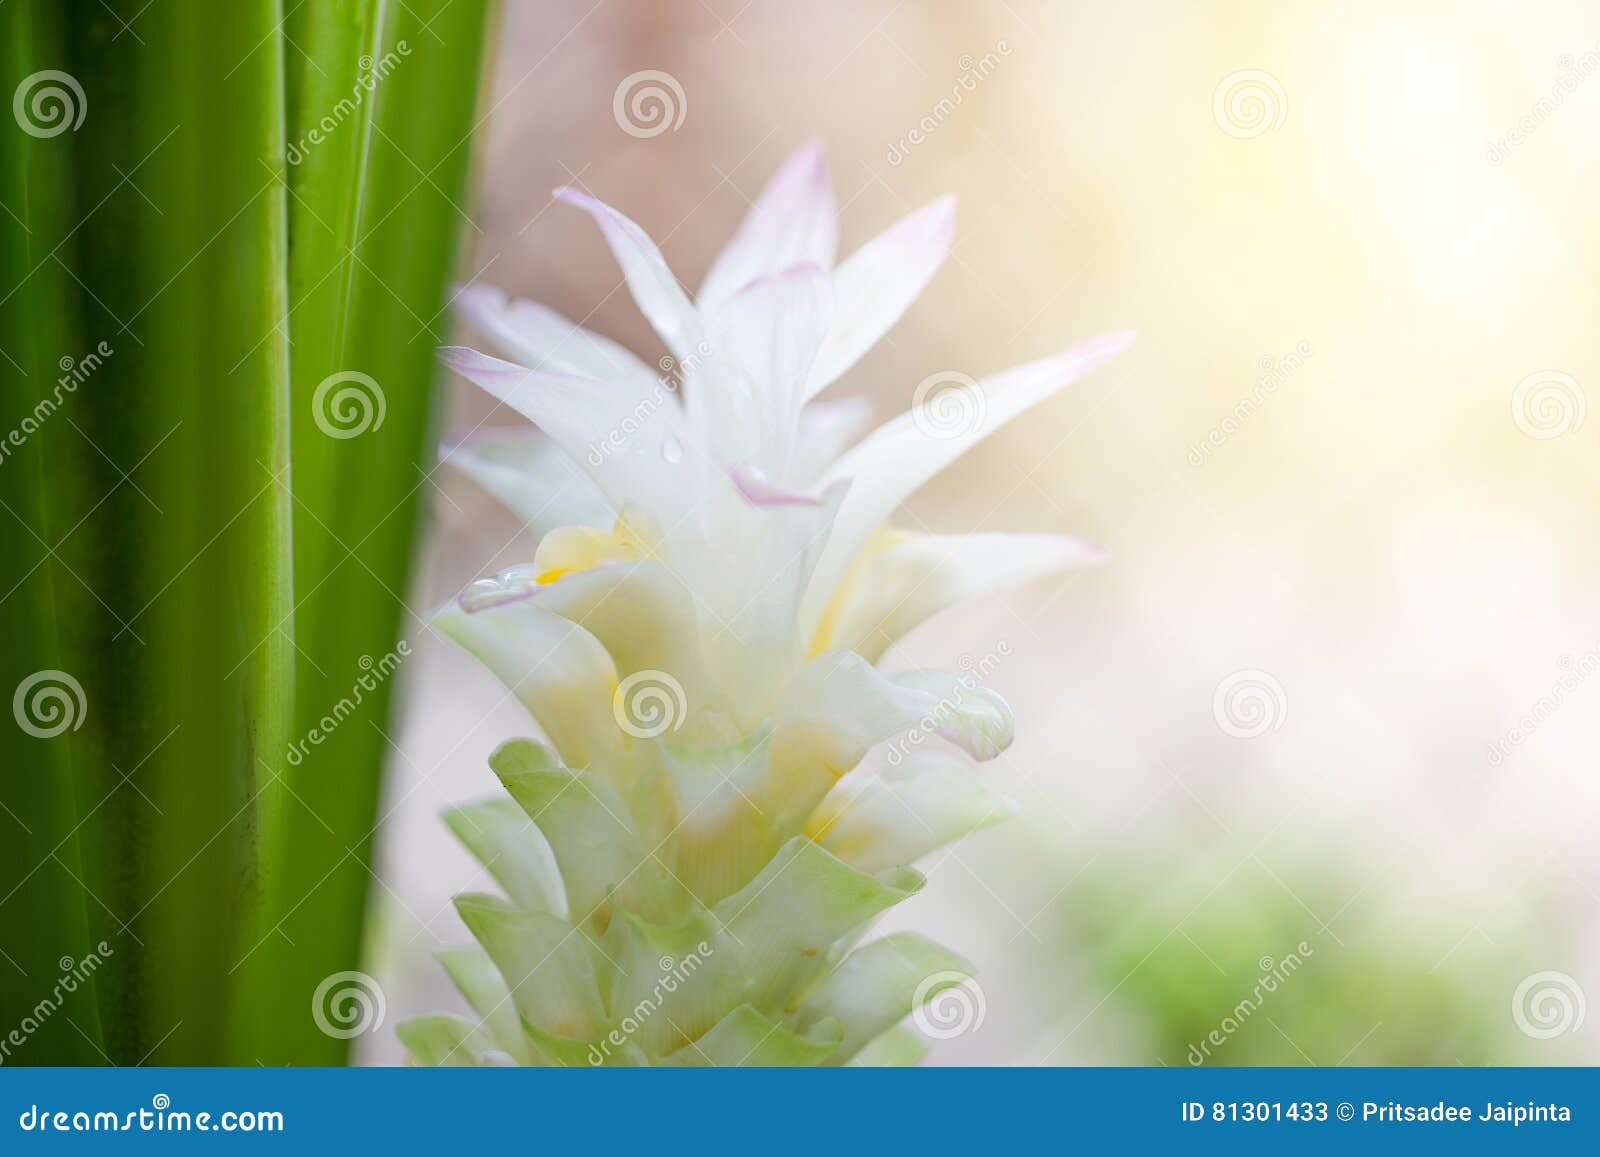 Flor branca da cúrcuma imagem de stock. Imagem de flor - 81301433